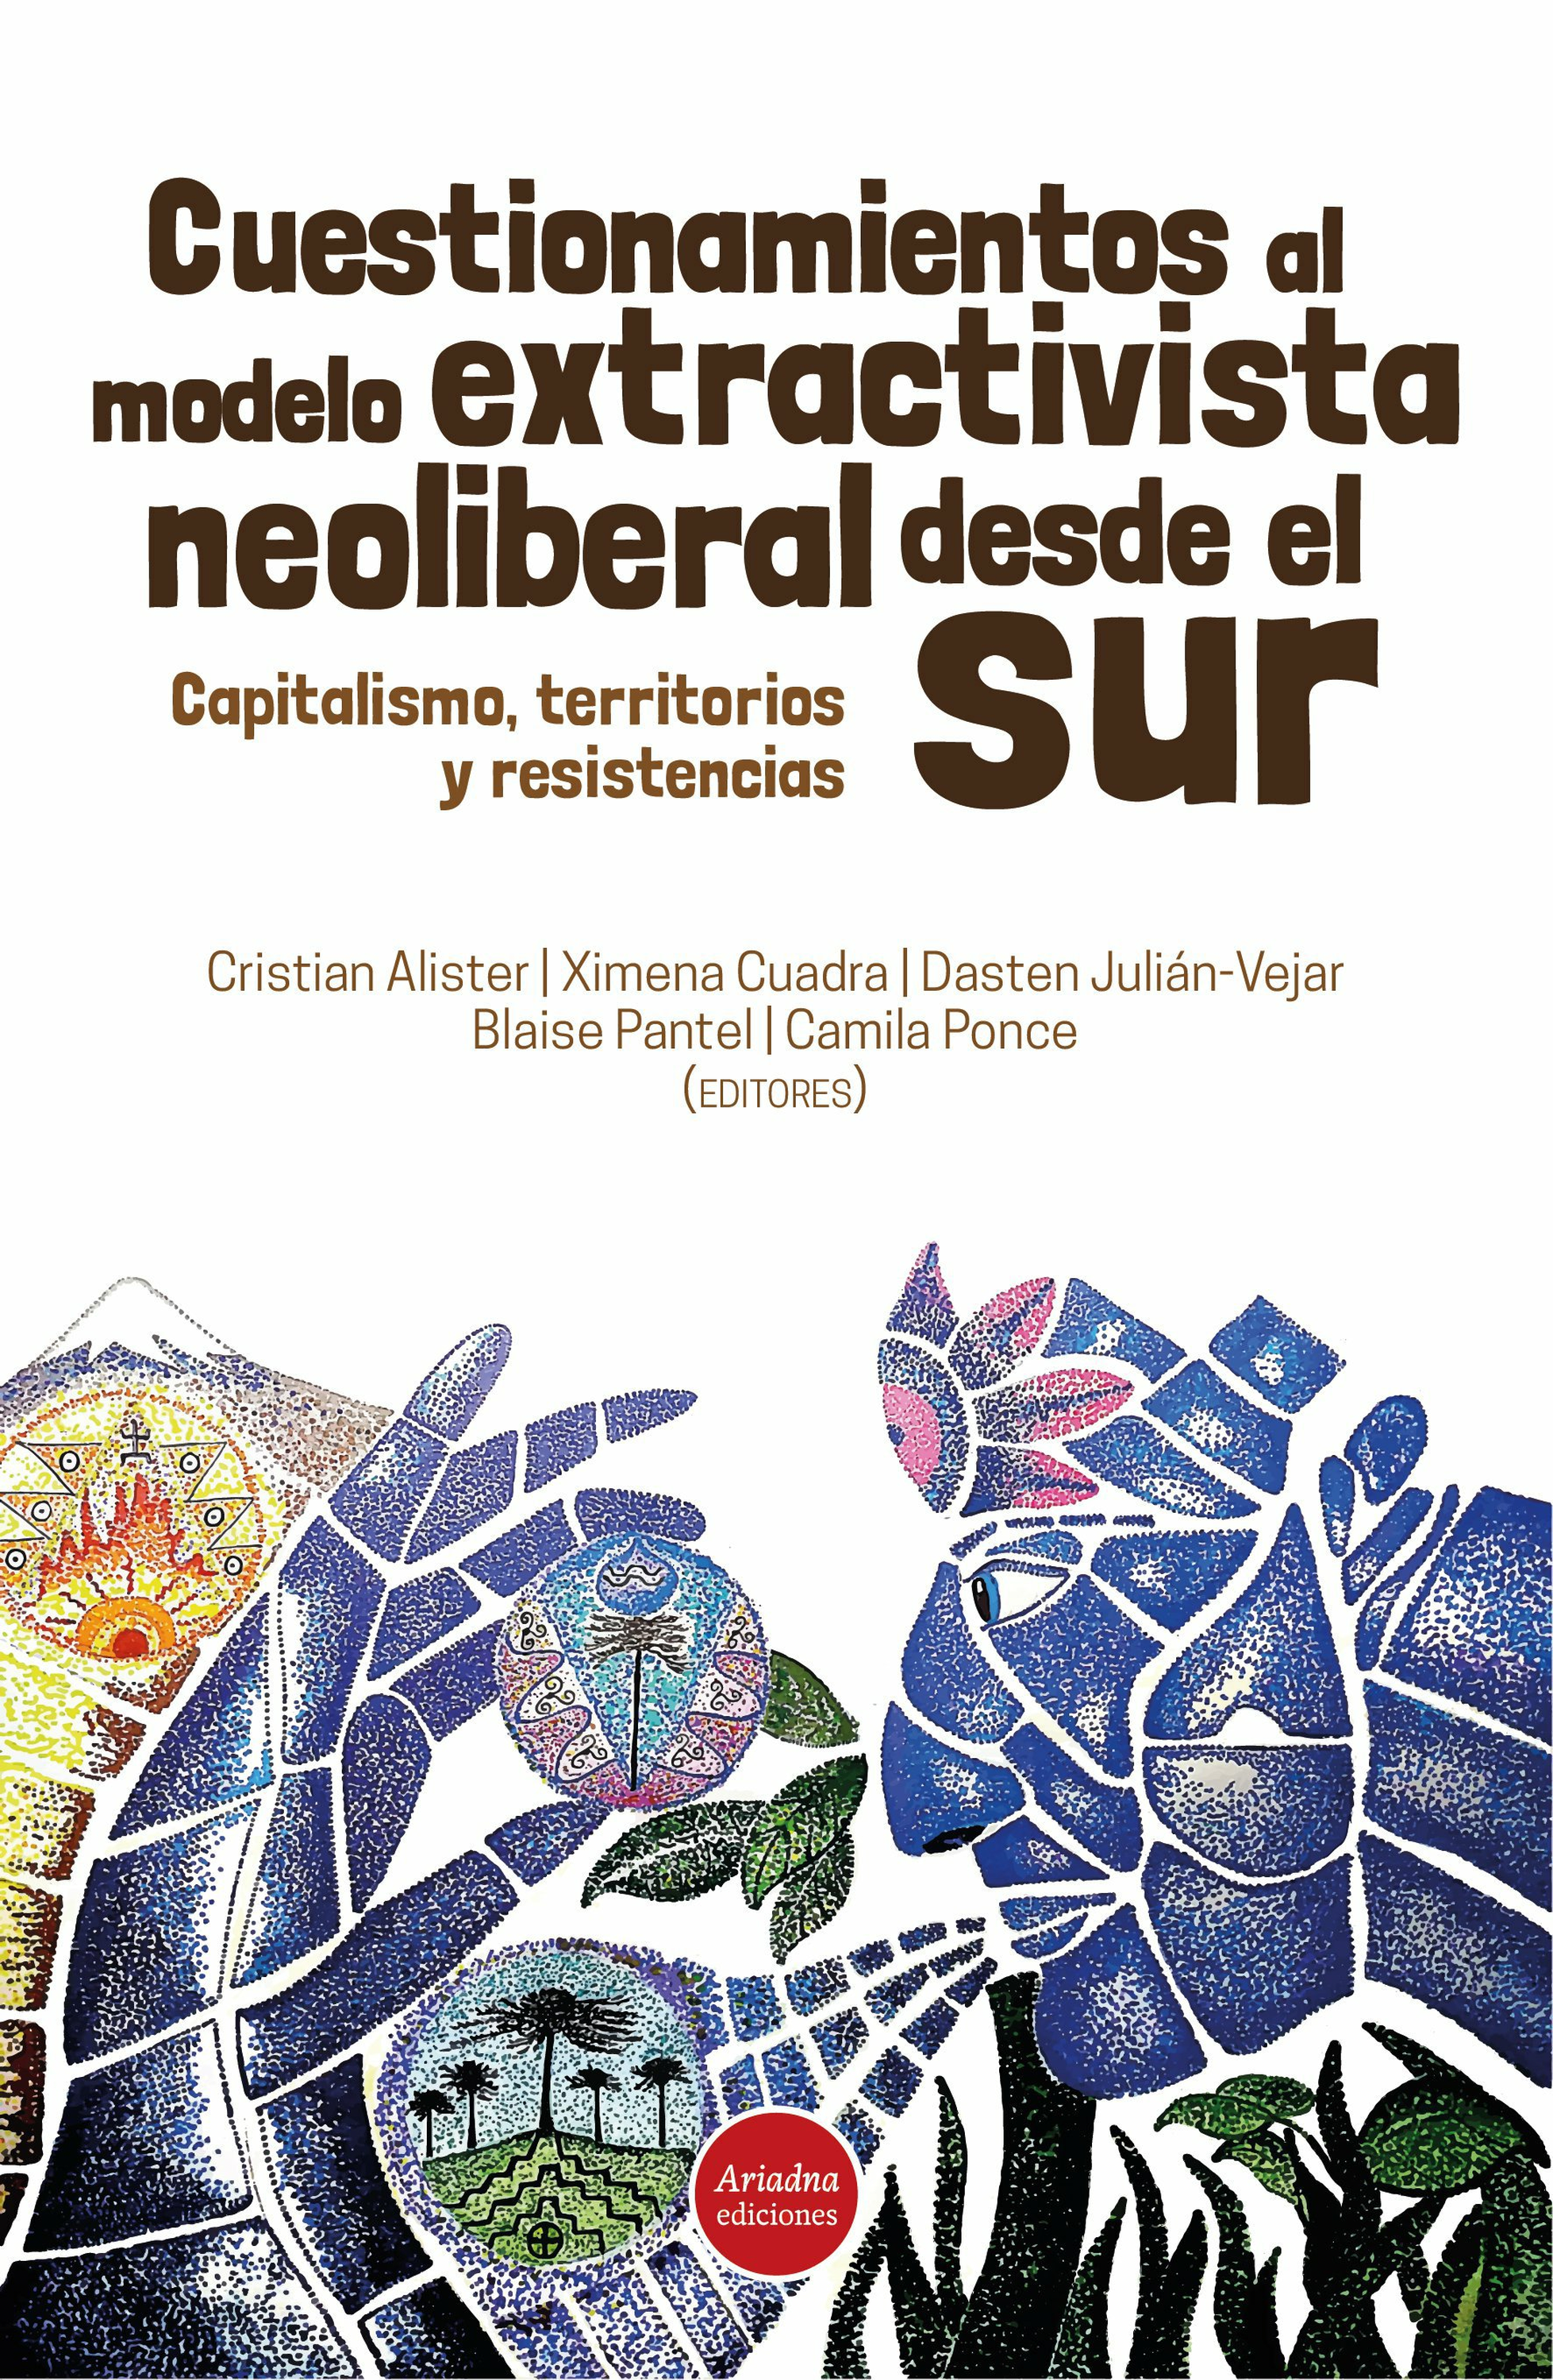 Ebook Cuestionamientos al modelo extractivista neoliberal desde el Sur -  Capitalismo, territorios y resistencias - 7Switch